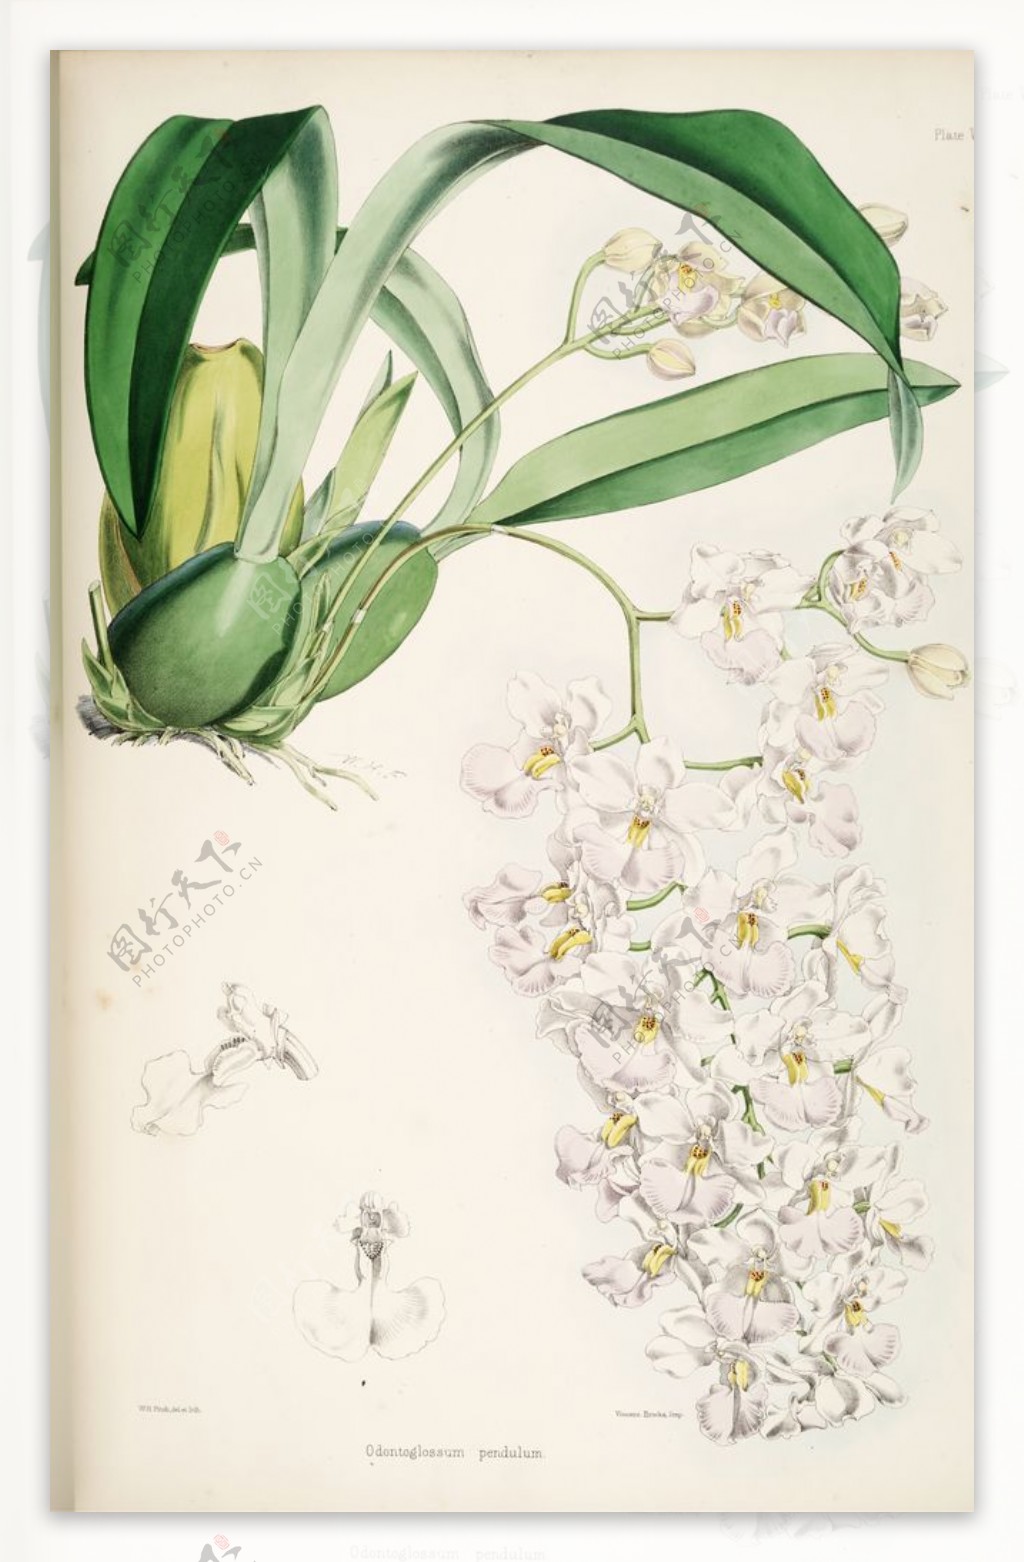 欧式美式手绘自然植物本草插画